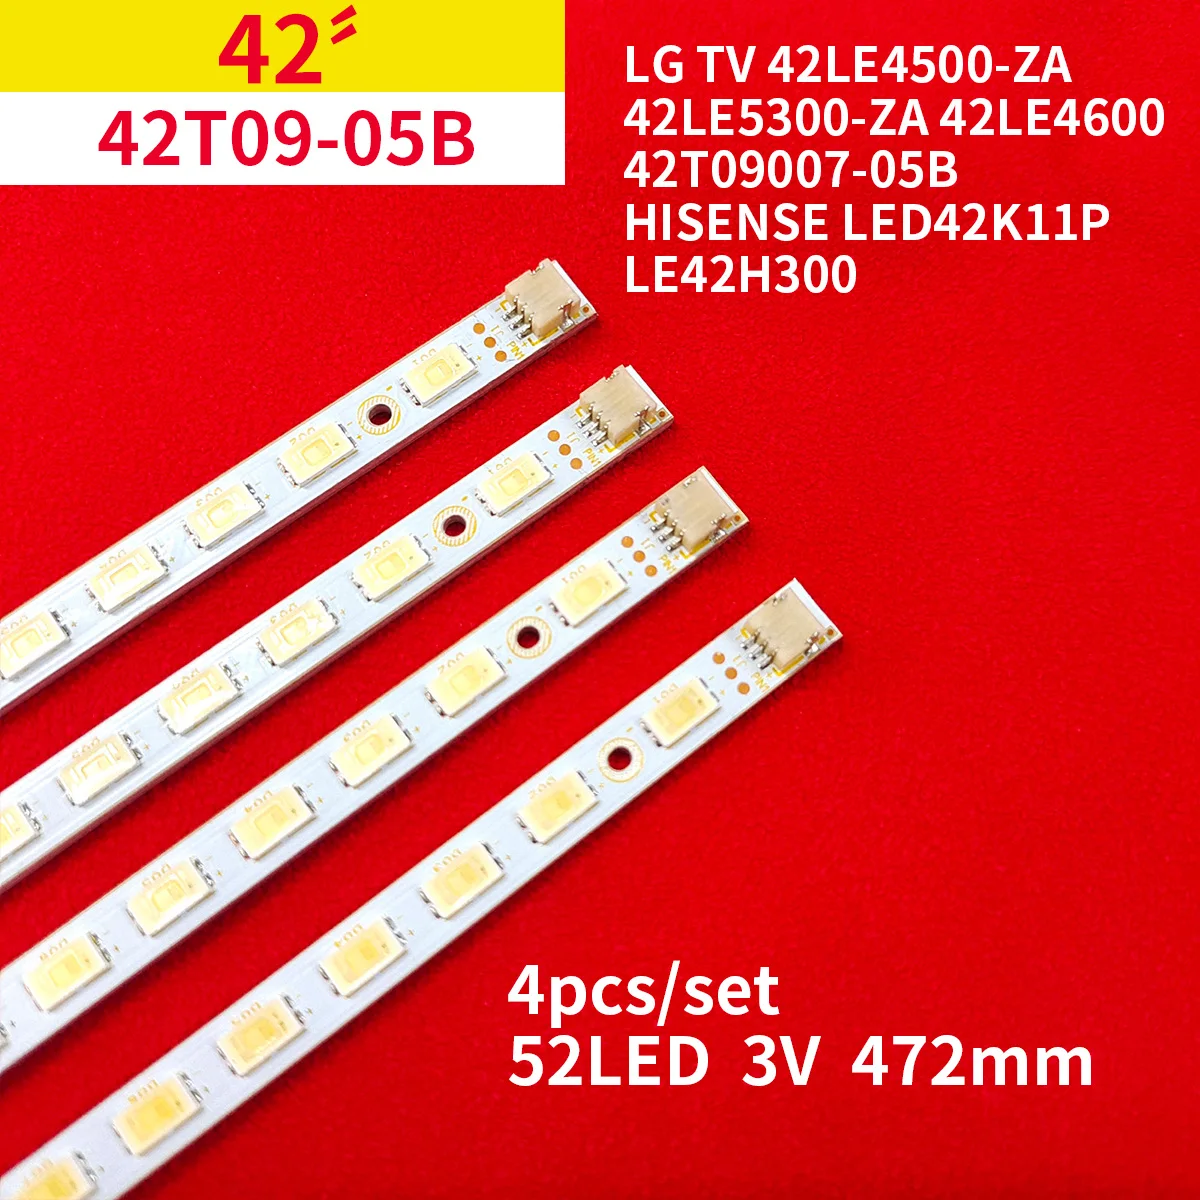 LED Backlight Strip for LG 42LE4500-ZA 42LE4600 42T09007-05B 42T09-05B Hisense LED42K11P LE42H300 STA420A04_REV1.0